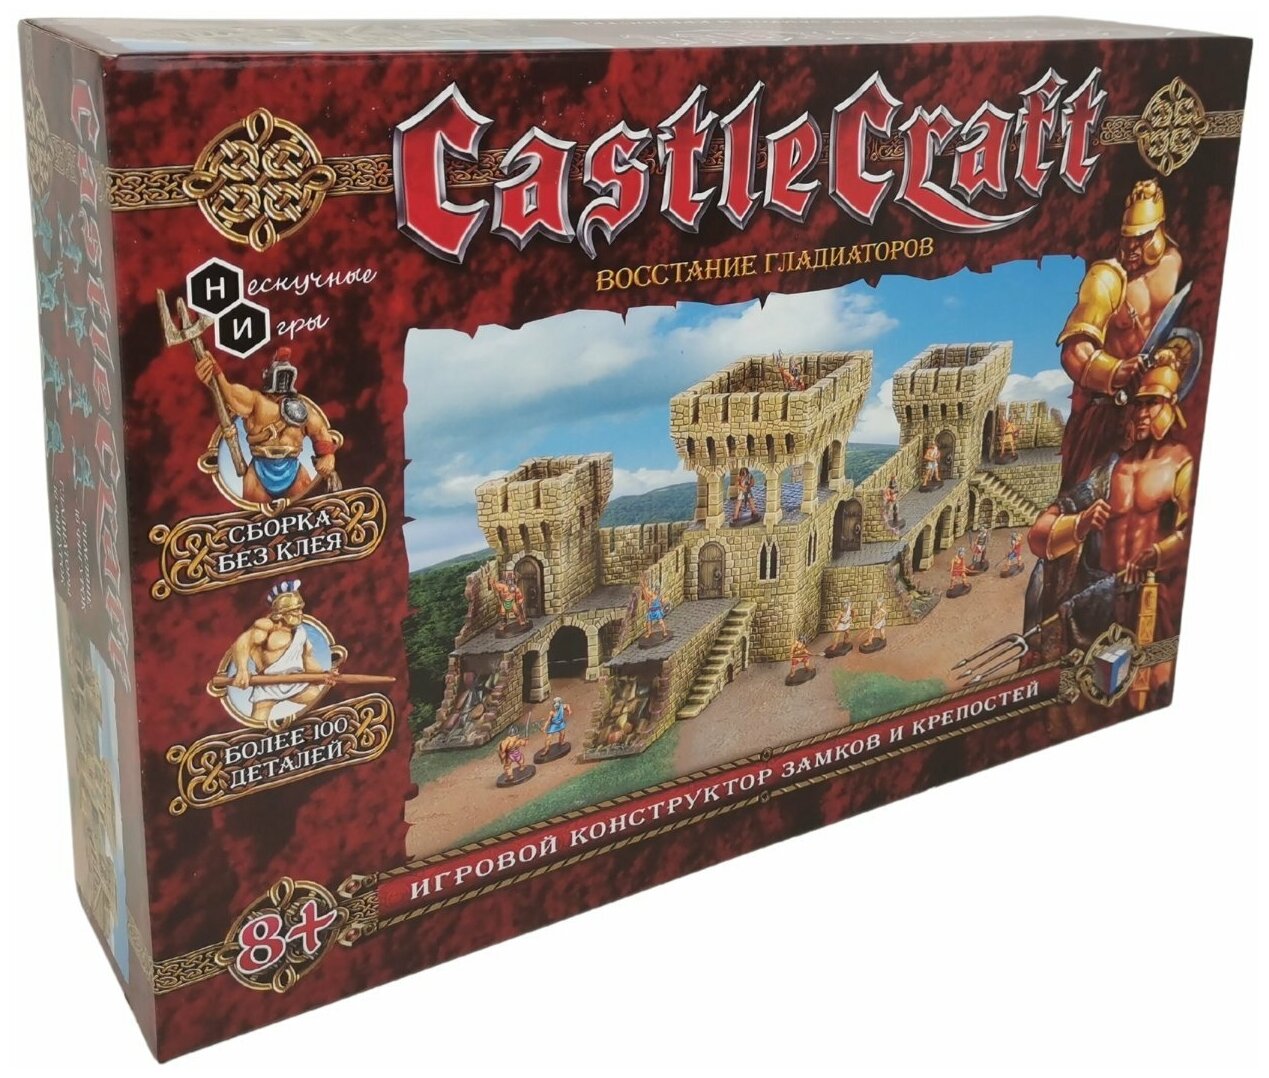 Конструктор-игра Технолог Castlecraft "Восстание Гладиаторов" (крепость)